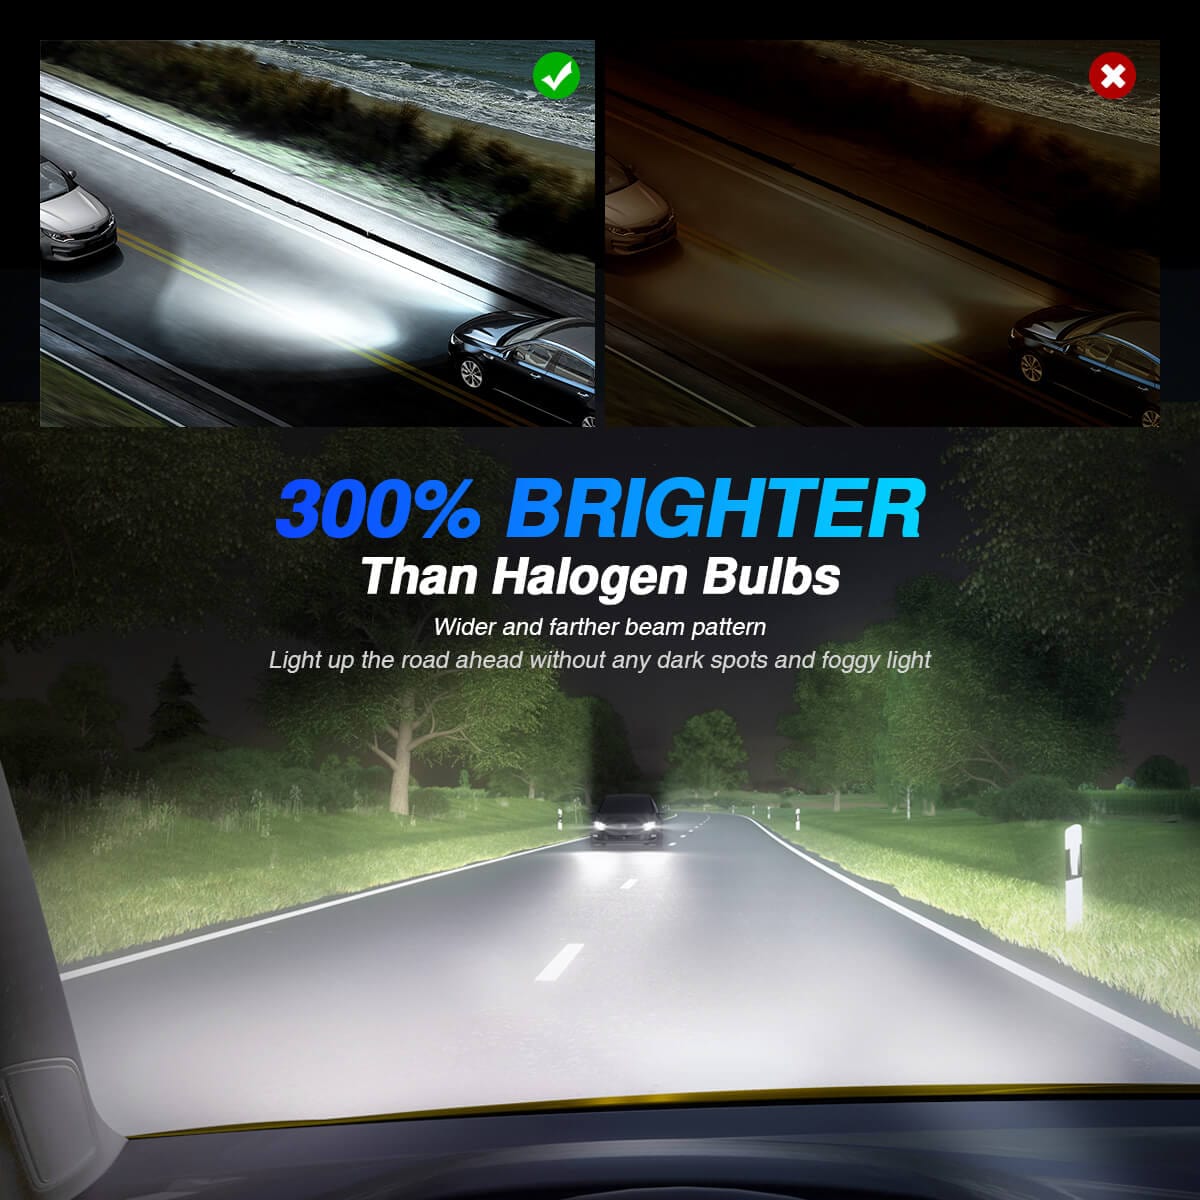 OSRAM NIGHT BREAKER H7 LED 220% set for VW Golf 6 H7 & Canbus adapter E9  5813